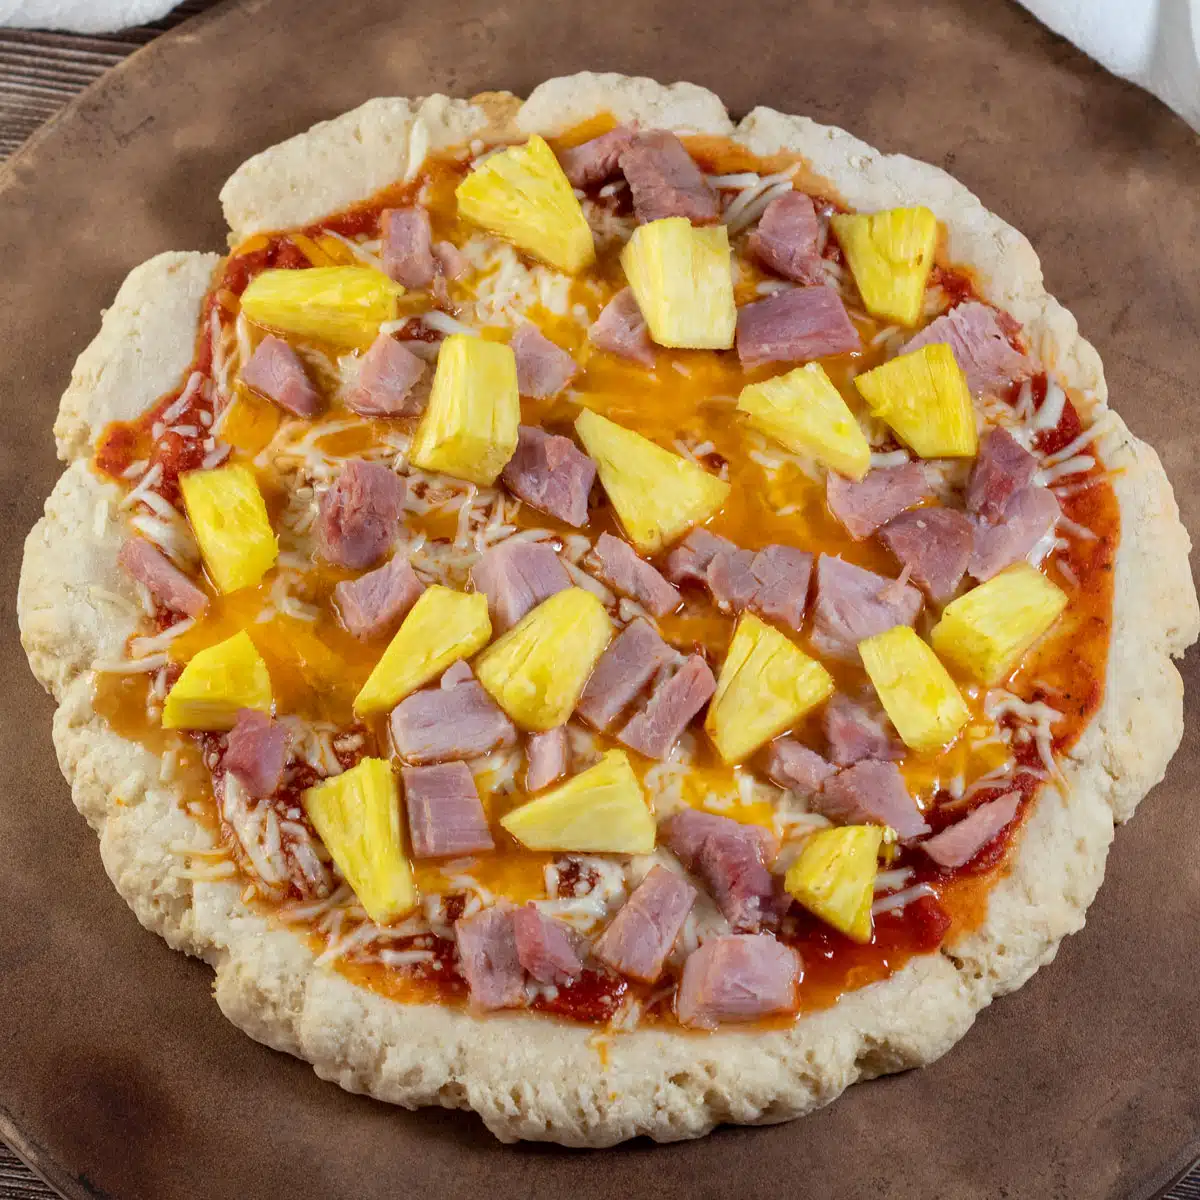 Fyrkantig bild som visar en pizza i hawaiiansk stil gjord på en pizzadegskorpa med 2 ingredienser.